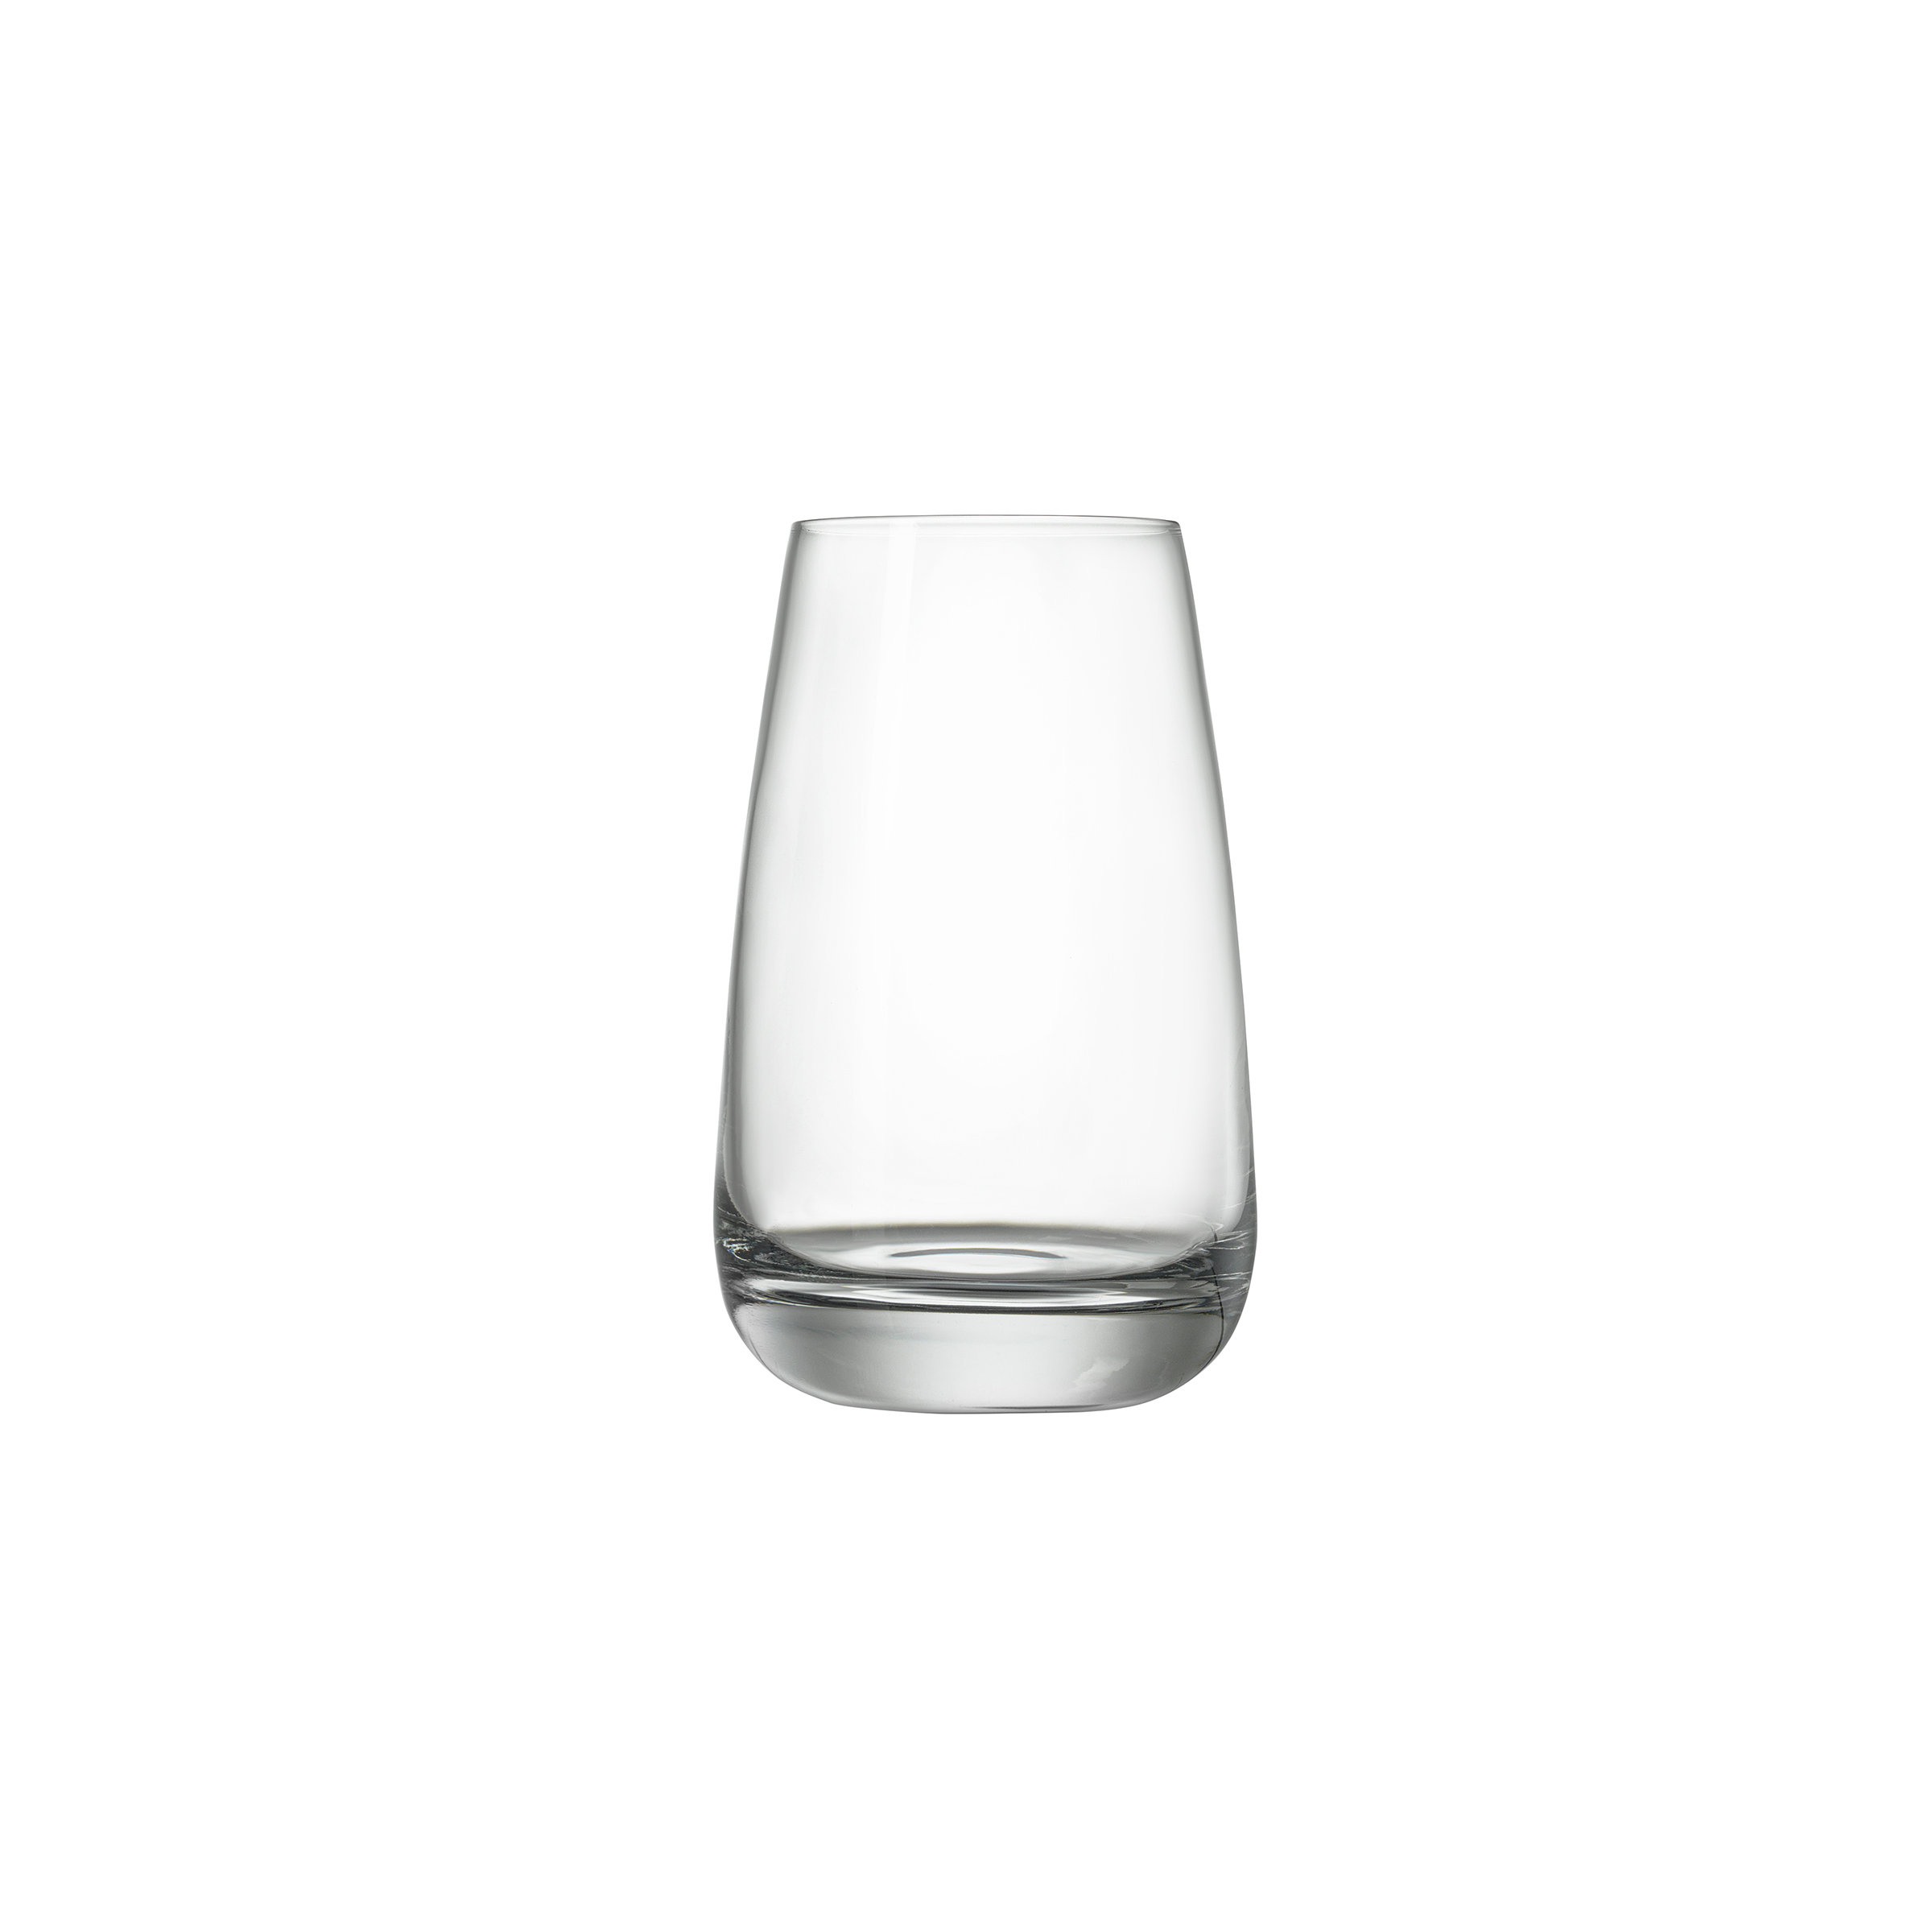 Luigi Bormioli Mixology 27 oz Spanish Gin & Tonic Glasses Set of 4